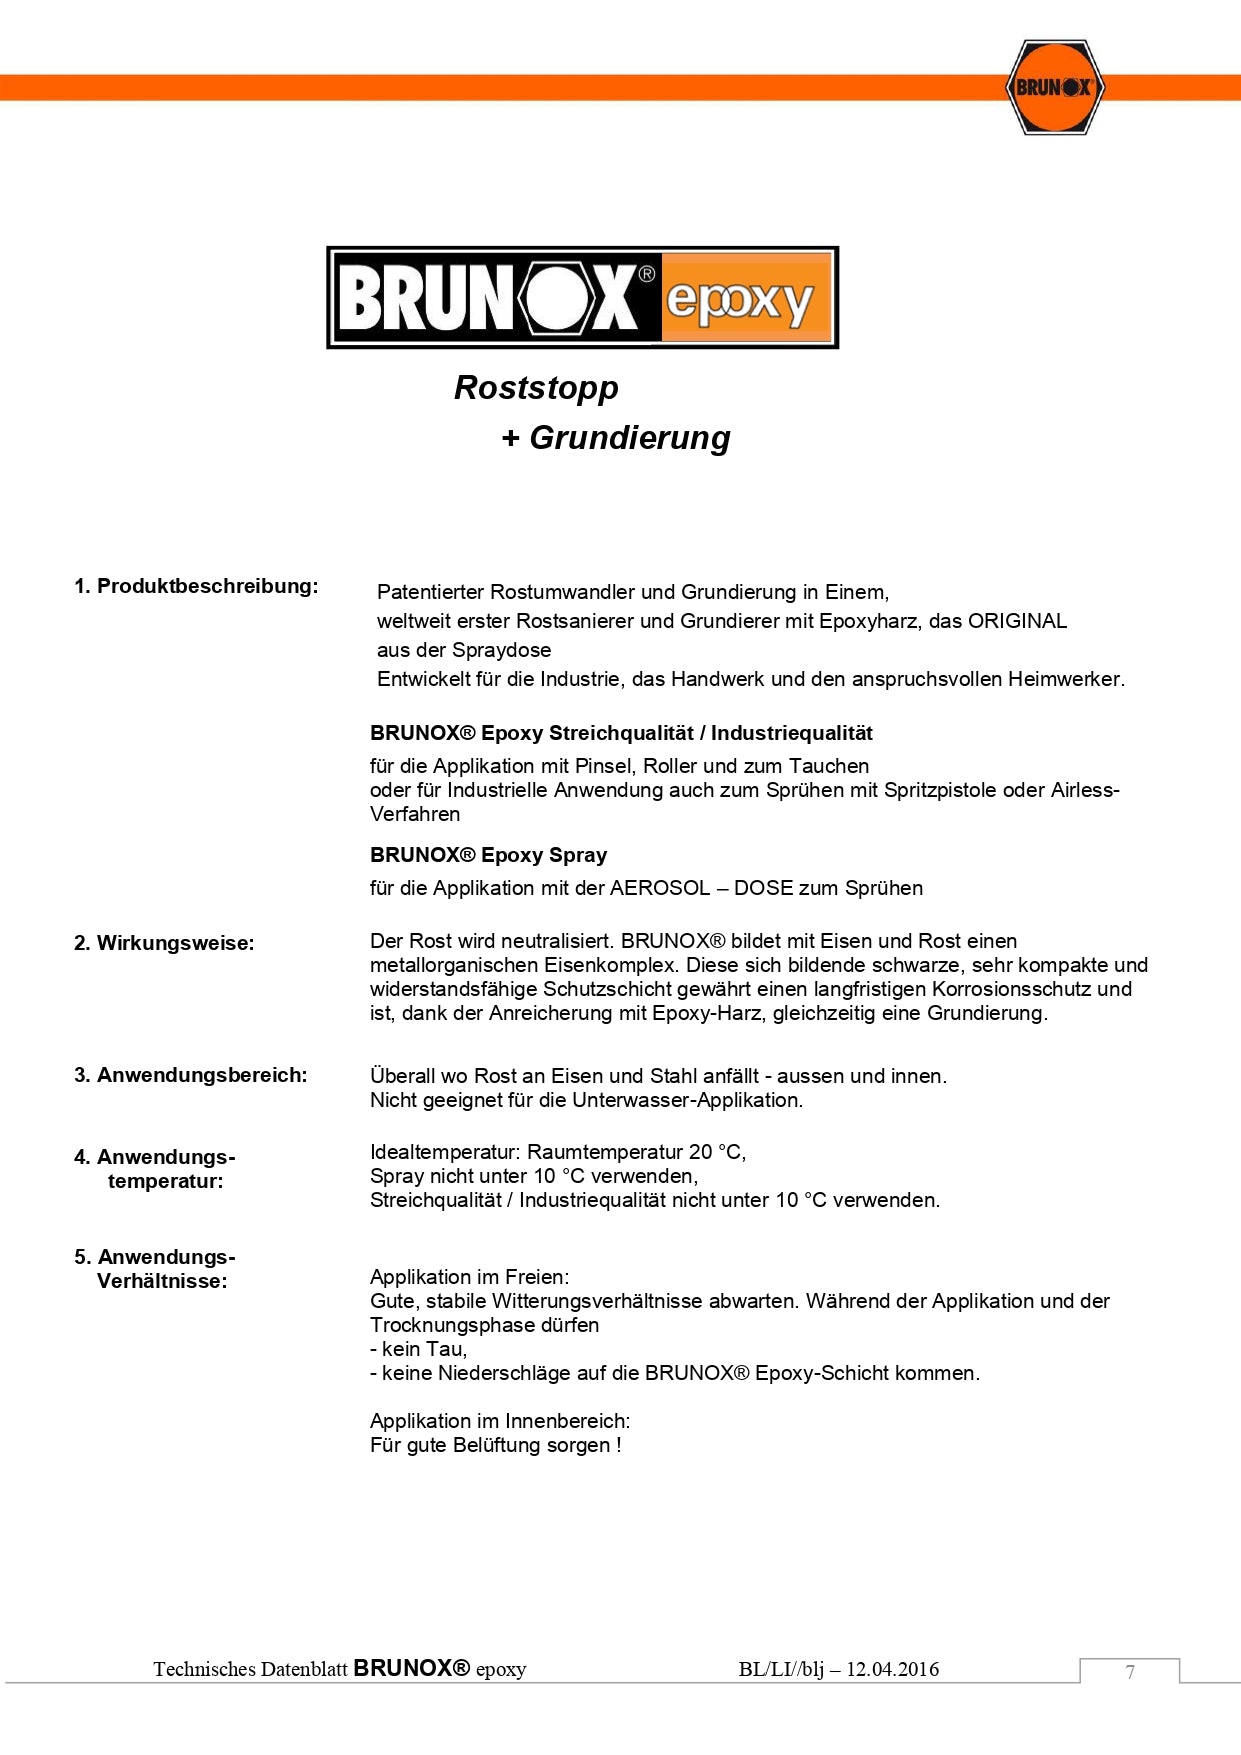 Brunox Epoxy 6 x 400 ML Spray Rostumwandler Rostsanierer Grundierer  7610567930028